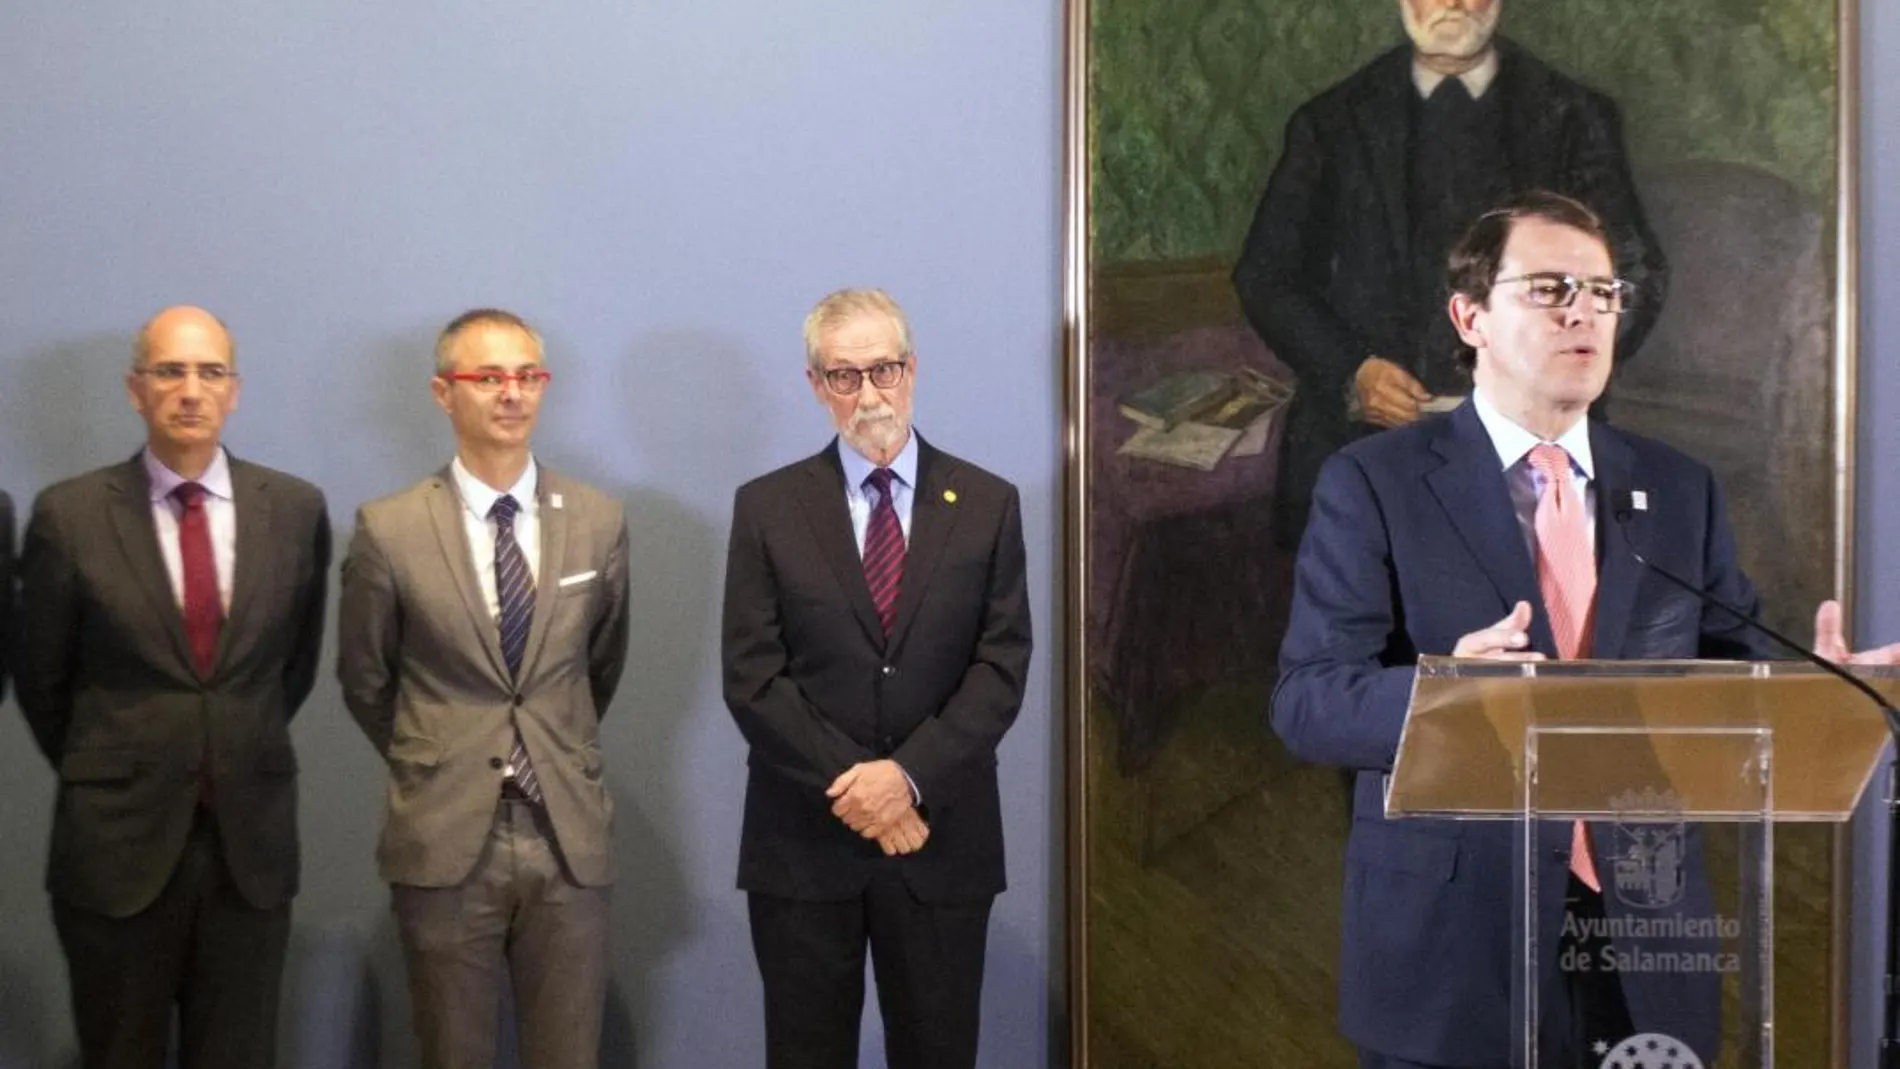 El alcalde Alfonso Fernández Mañueco presenta la exposición junto a Javier Iglesias, Francisco Blanco y Ricardo Rivero/ David Arranz/Ical